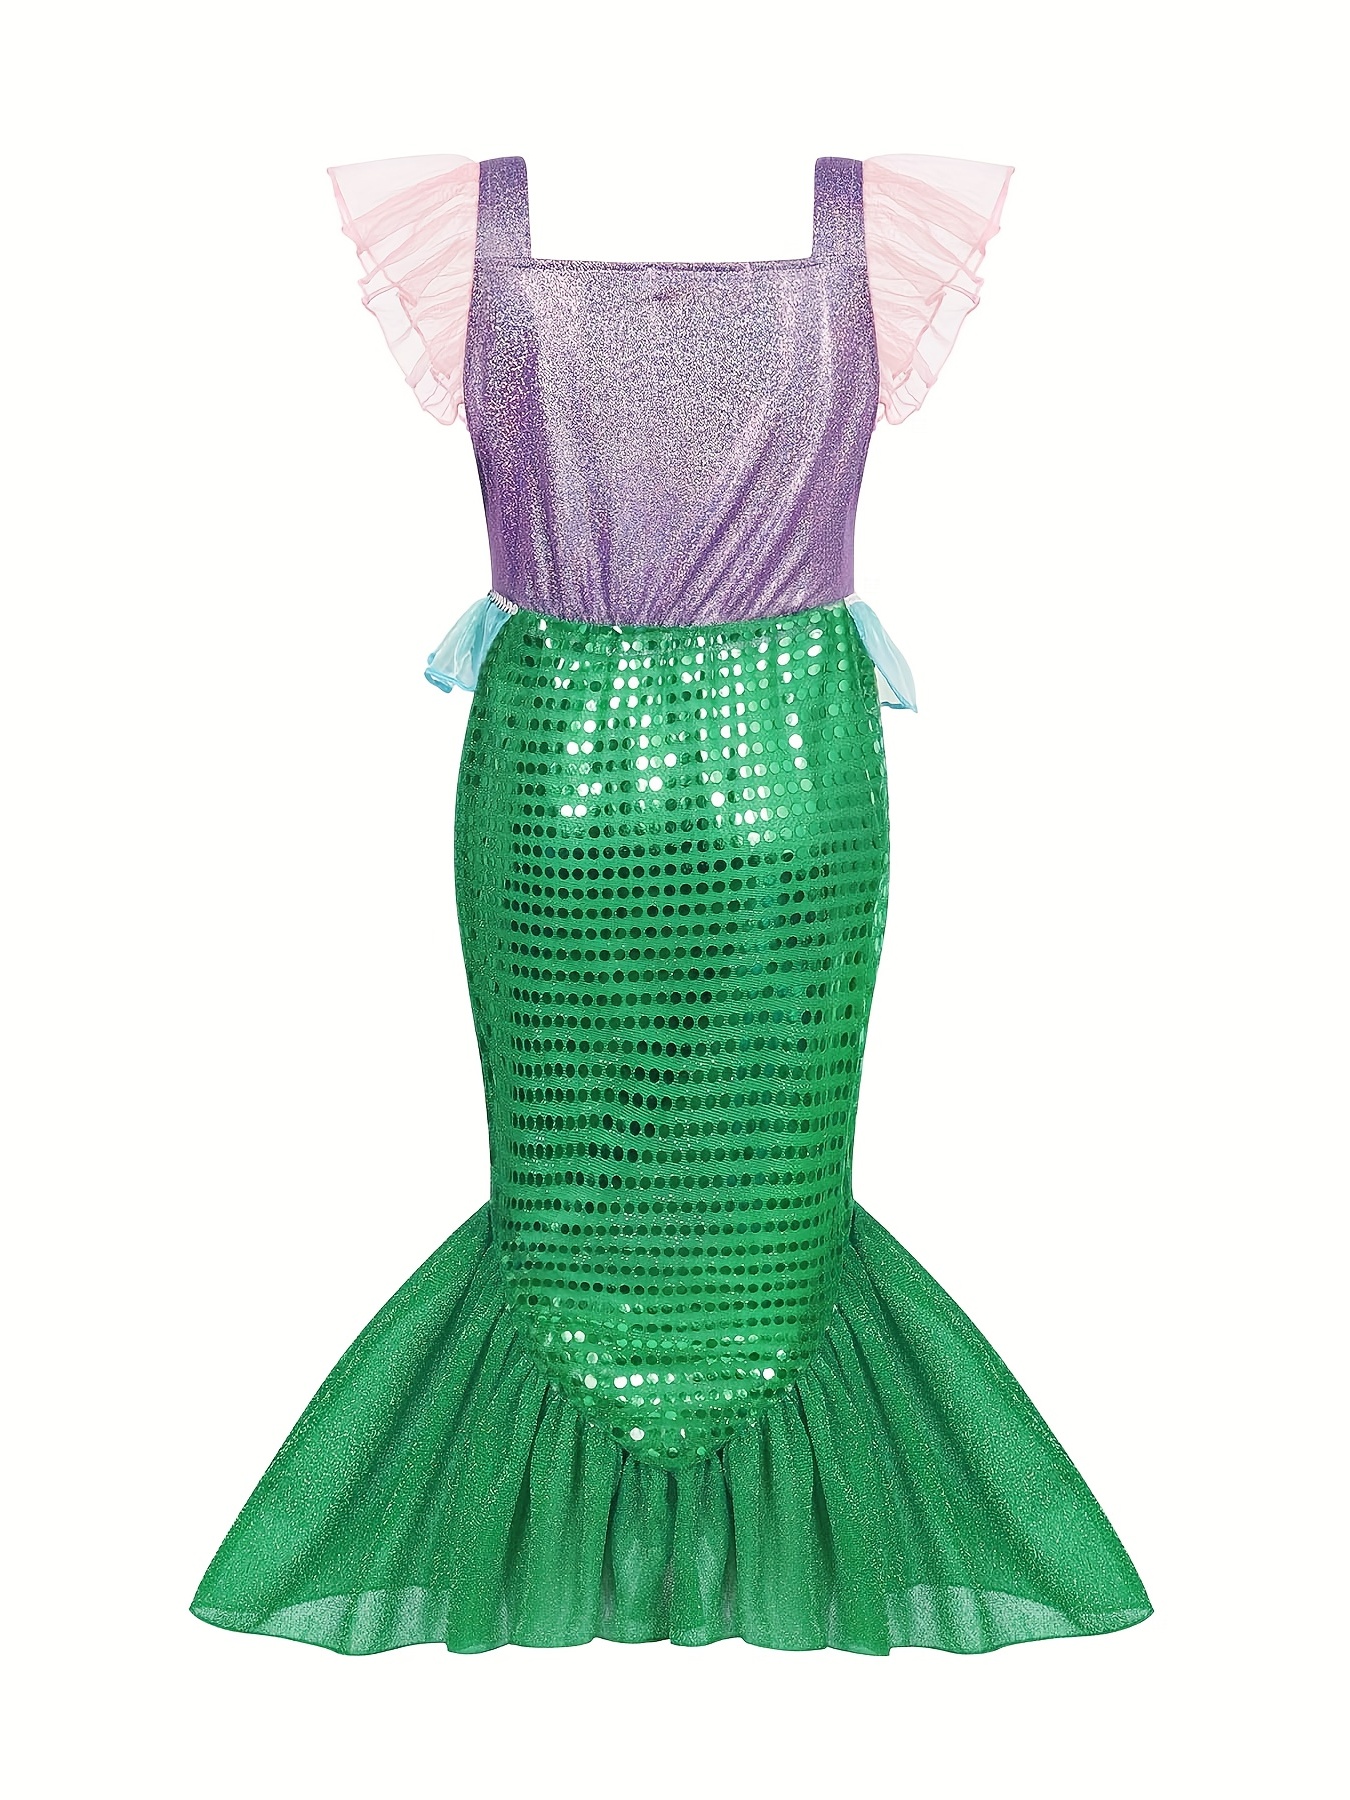 Disfraz de sirena Ariel para niñas pequeñas, disfraz de princesa con  accesorios